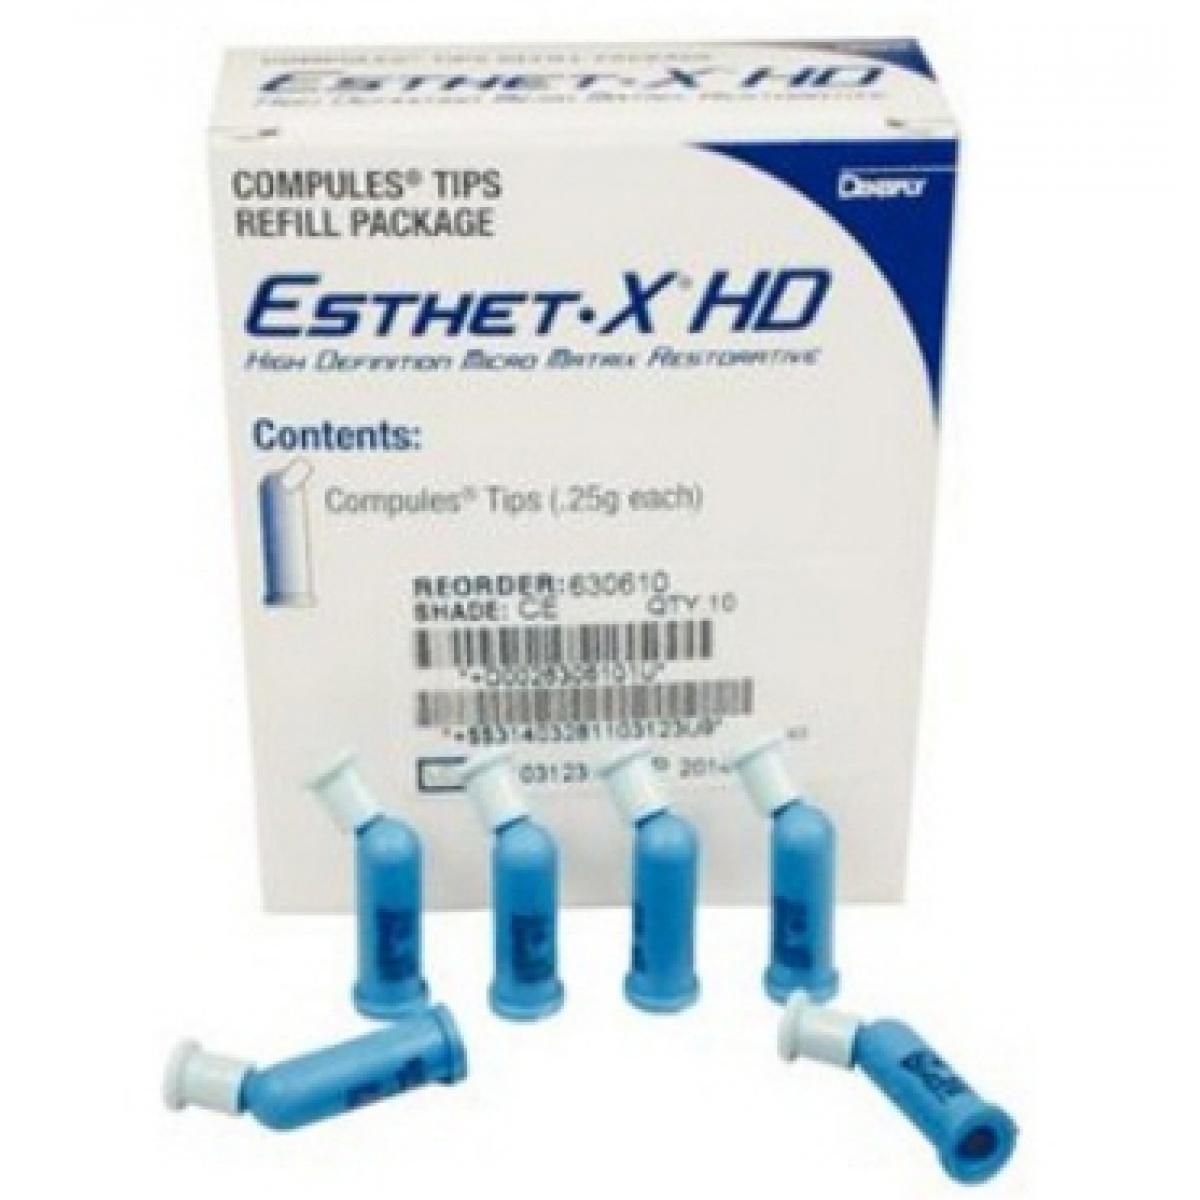 ESTHET XD XL COMPULES 10U DENTSPLY -